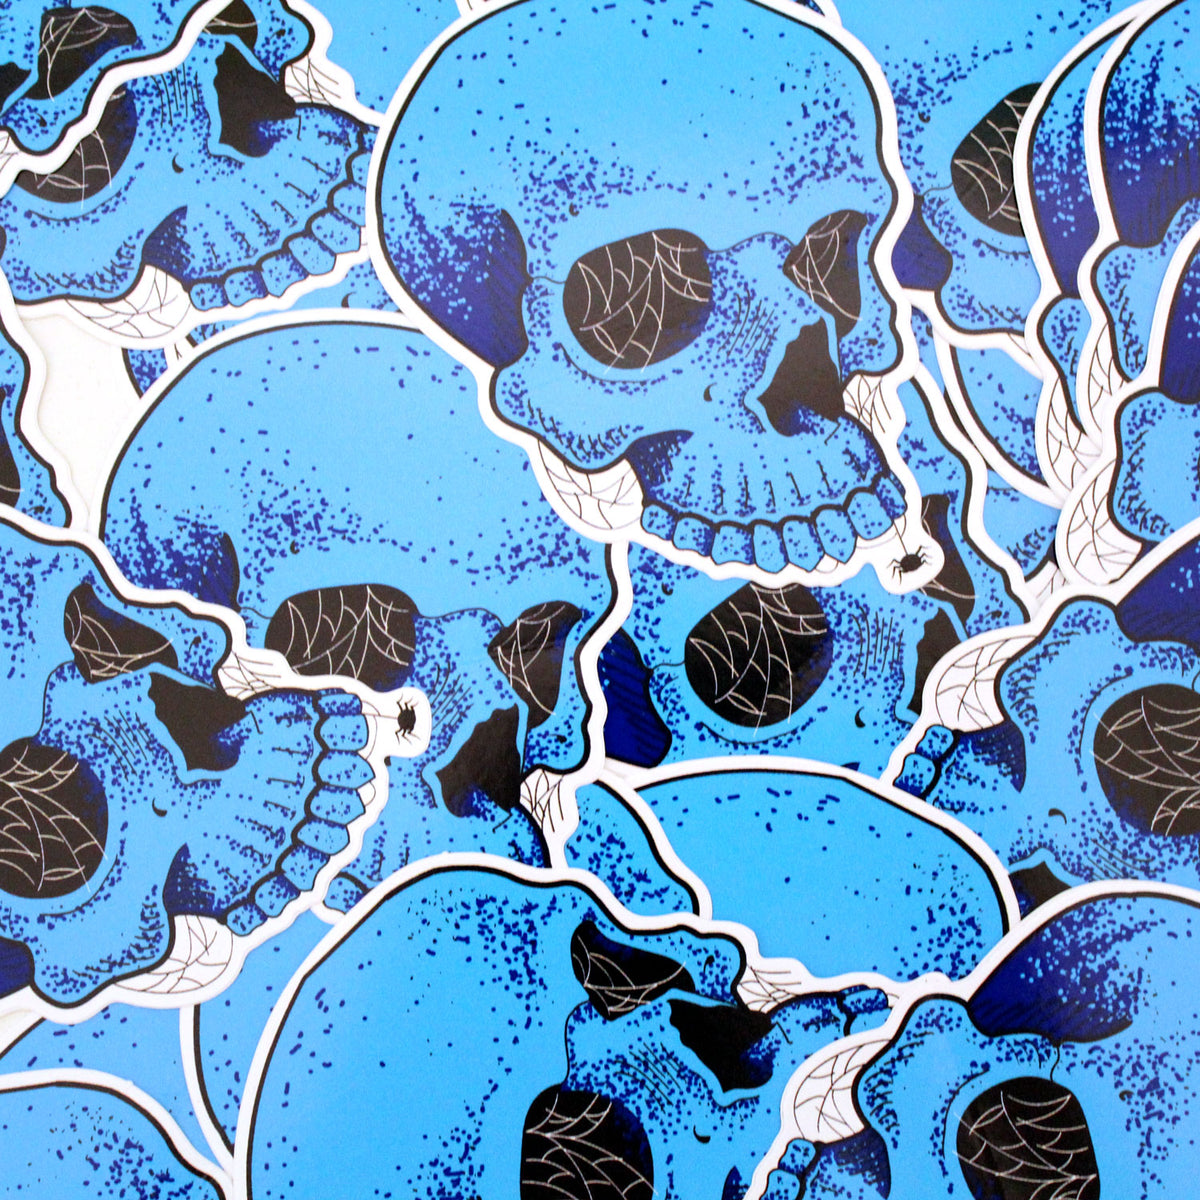 Blue Skull Sticker